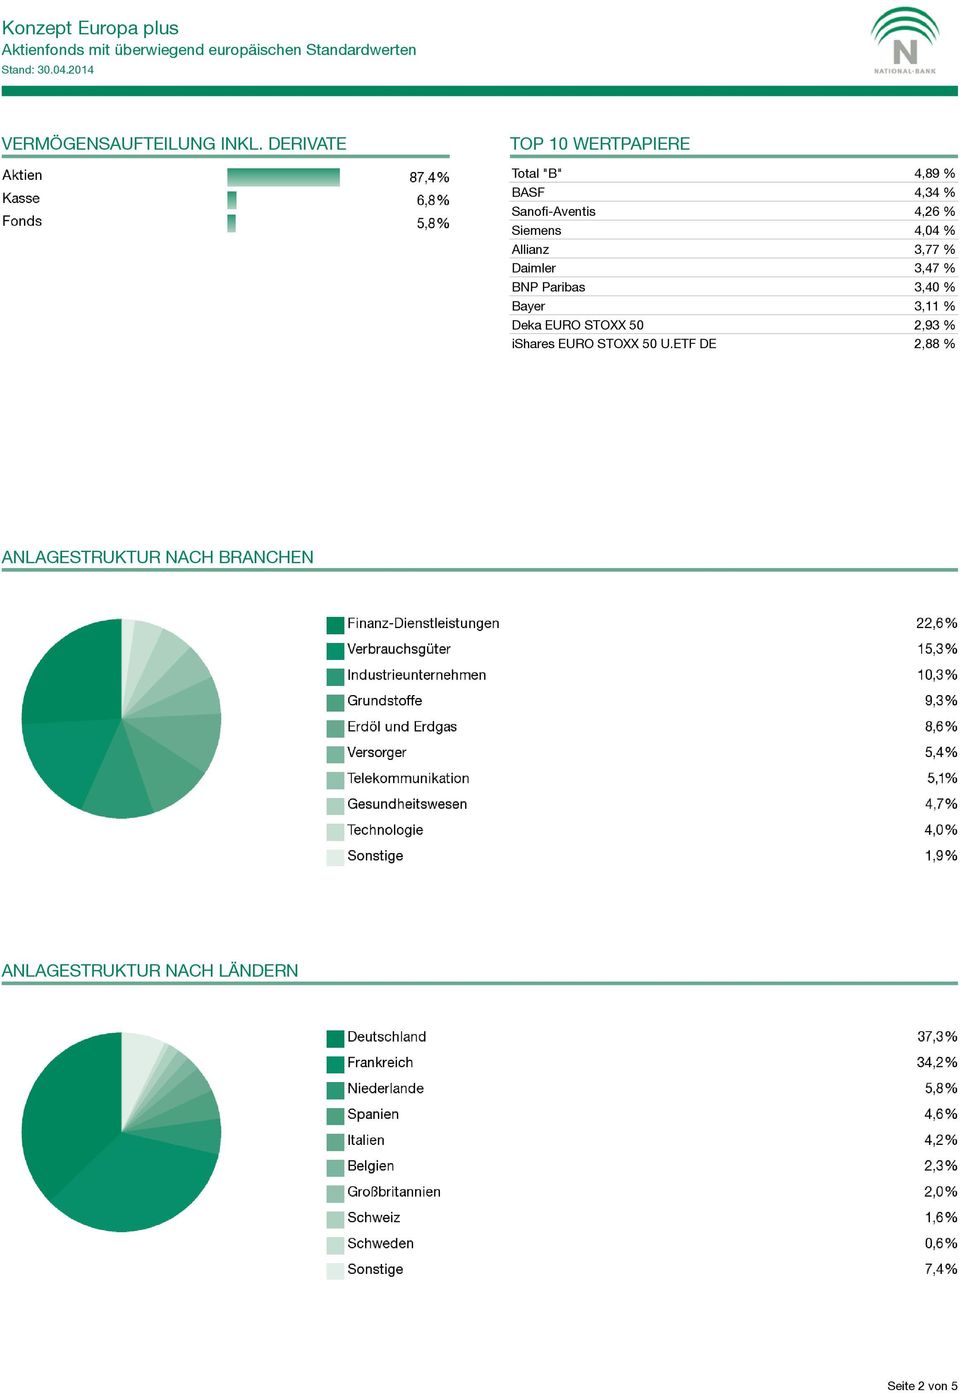 Siemens 4,04 % Allianz 3,77 % Daimler 3,47 % BNP Paribas 3,40 % Bayer 3,11 %